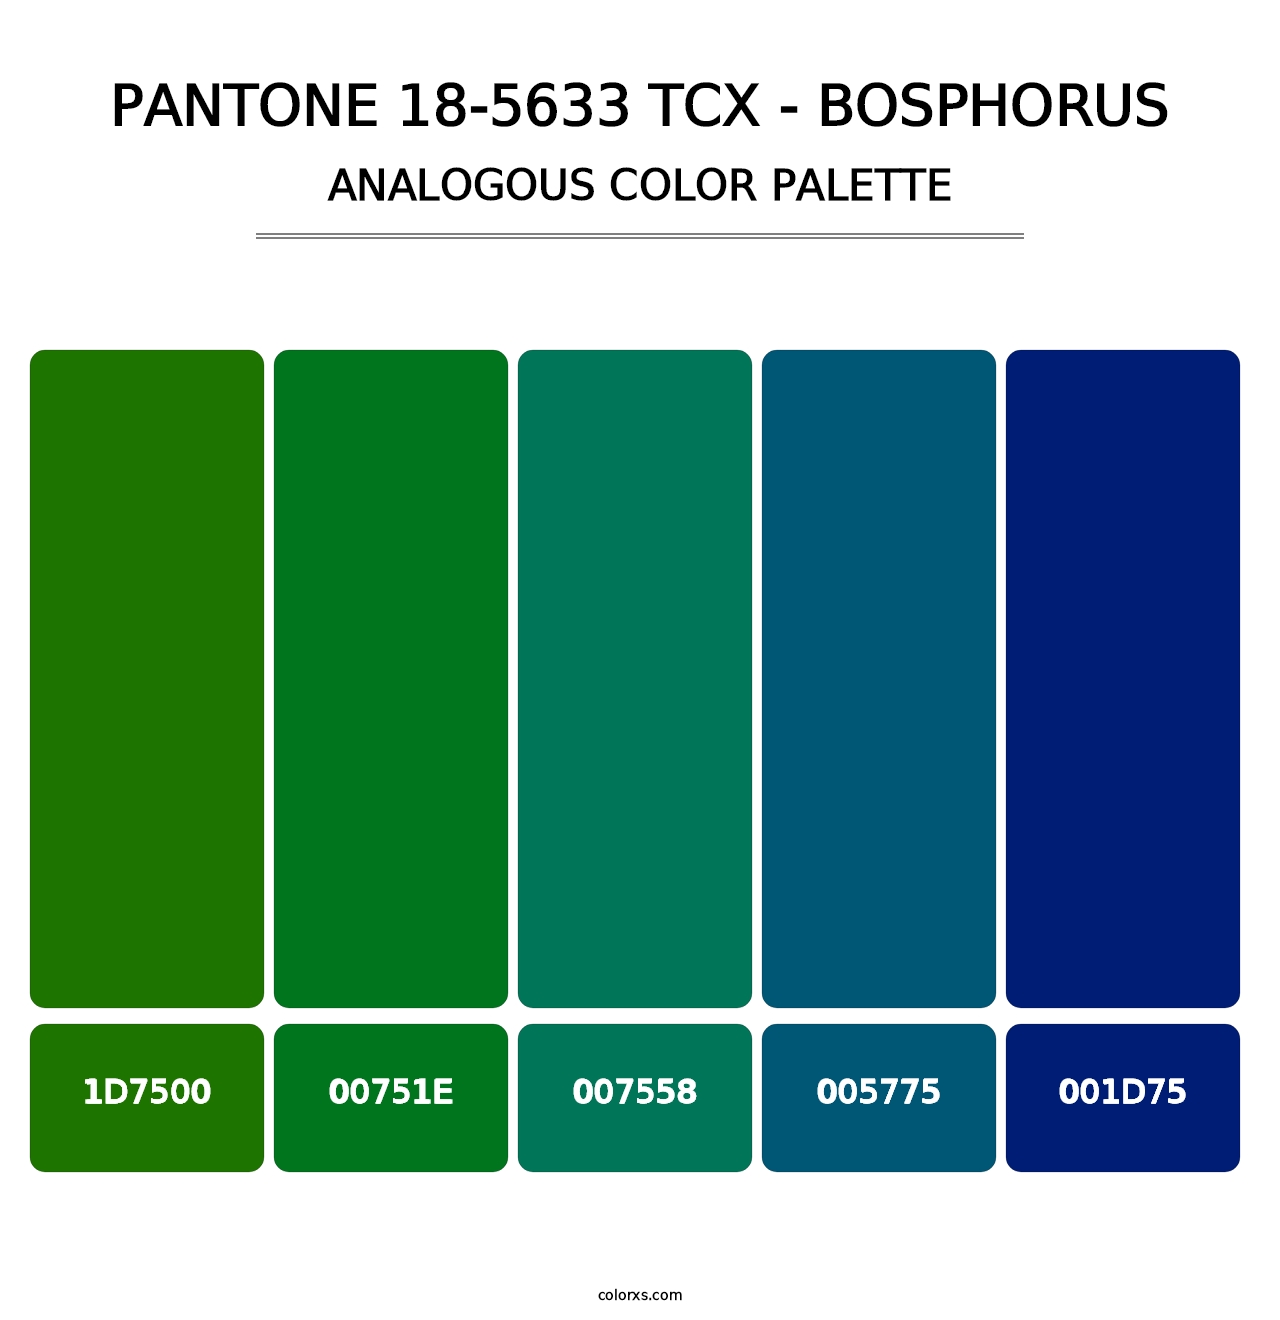 PANTONE 18-5633 TCX - Bosphorus - Analogous Color Palette